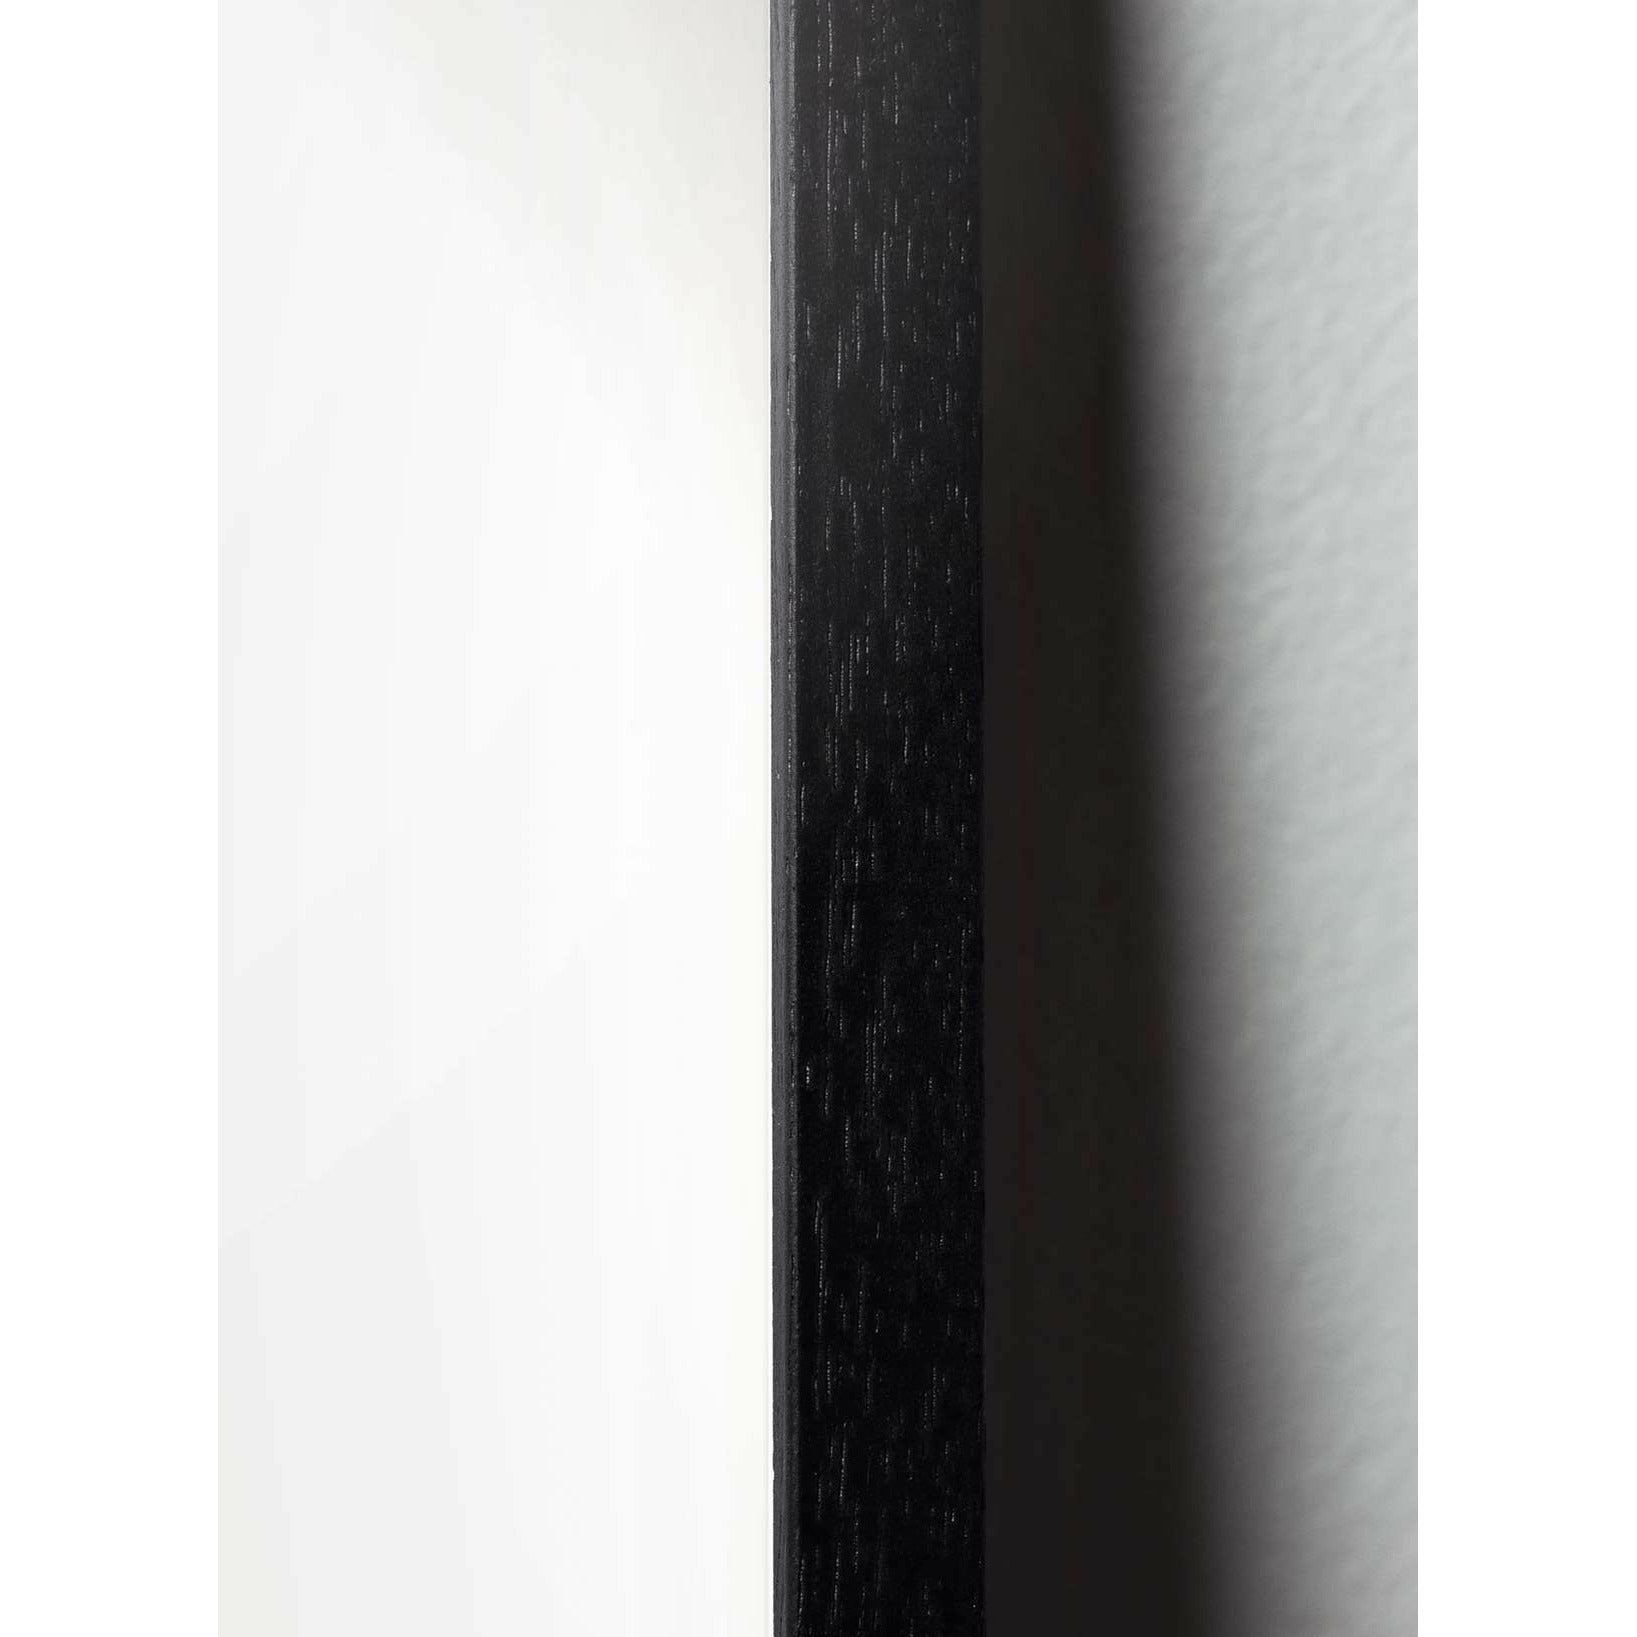 Pomysły Pelikan Classic Plakat, rama w czarnym lakierowanym drewnie 50x70 cm, ciemnoniebieskie tło